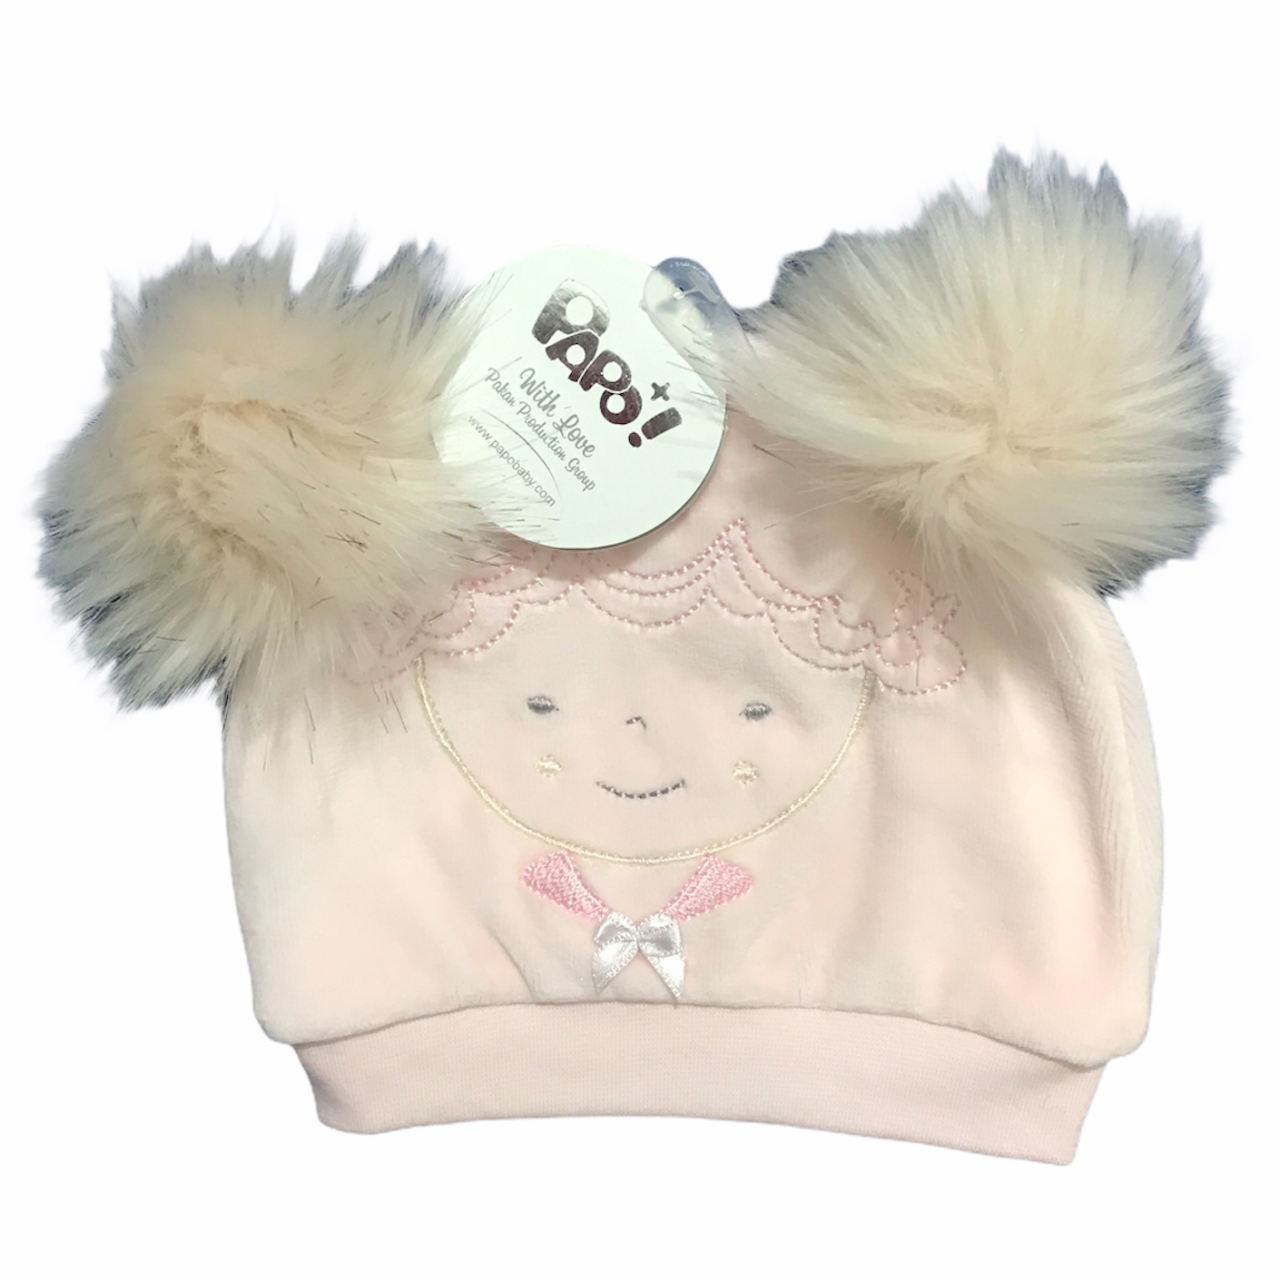 کلاه و شال و دستکش نوزاد -لباس نوزادی - کلاه نوزادی پاپو مدل hattie کد P1